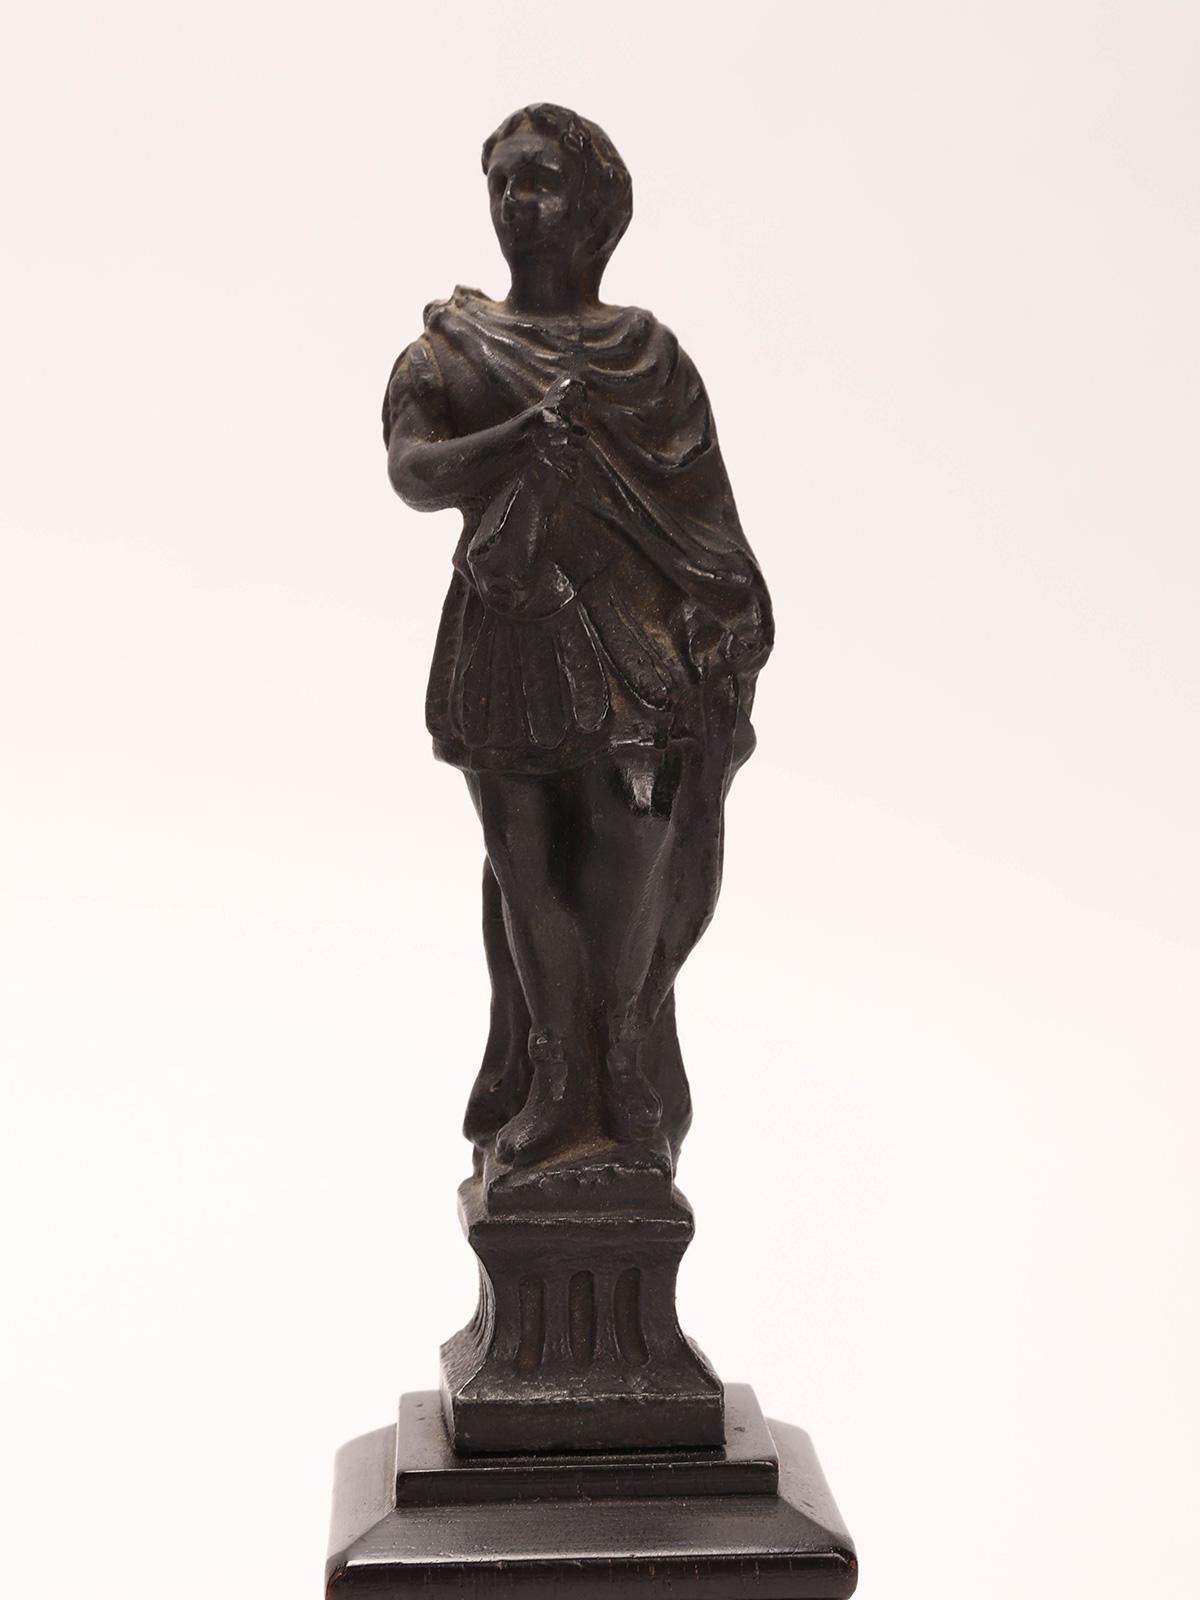 Italian Grand Tour : une paire de petites sculptures en métal blanc (patine de finition bronze), représentant une figurine de législateur romain et un guerrier romain, montées sur des bases en bois d'ébène. Venise, Italie 1880 ca.